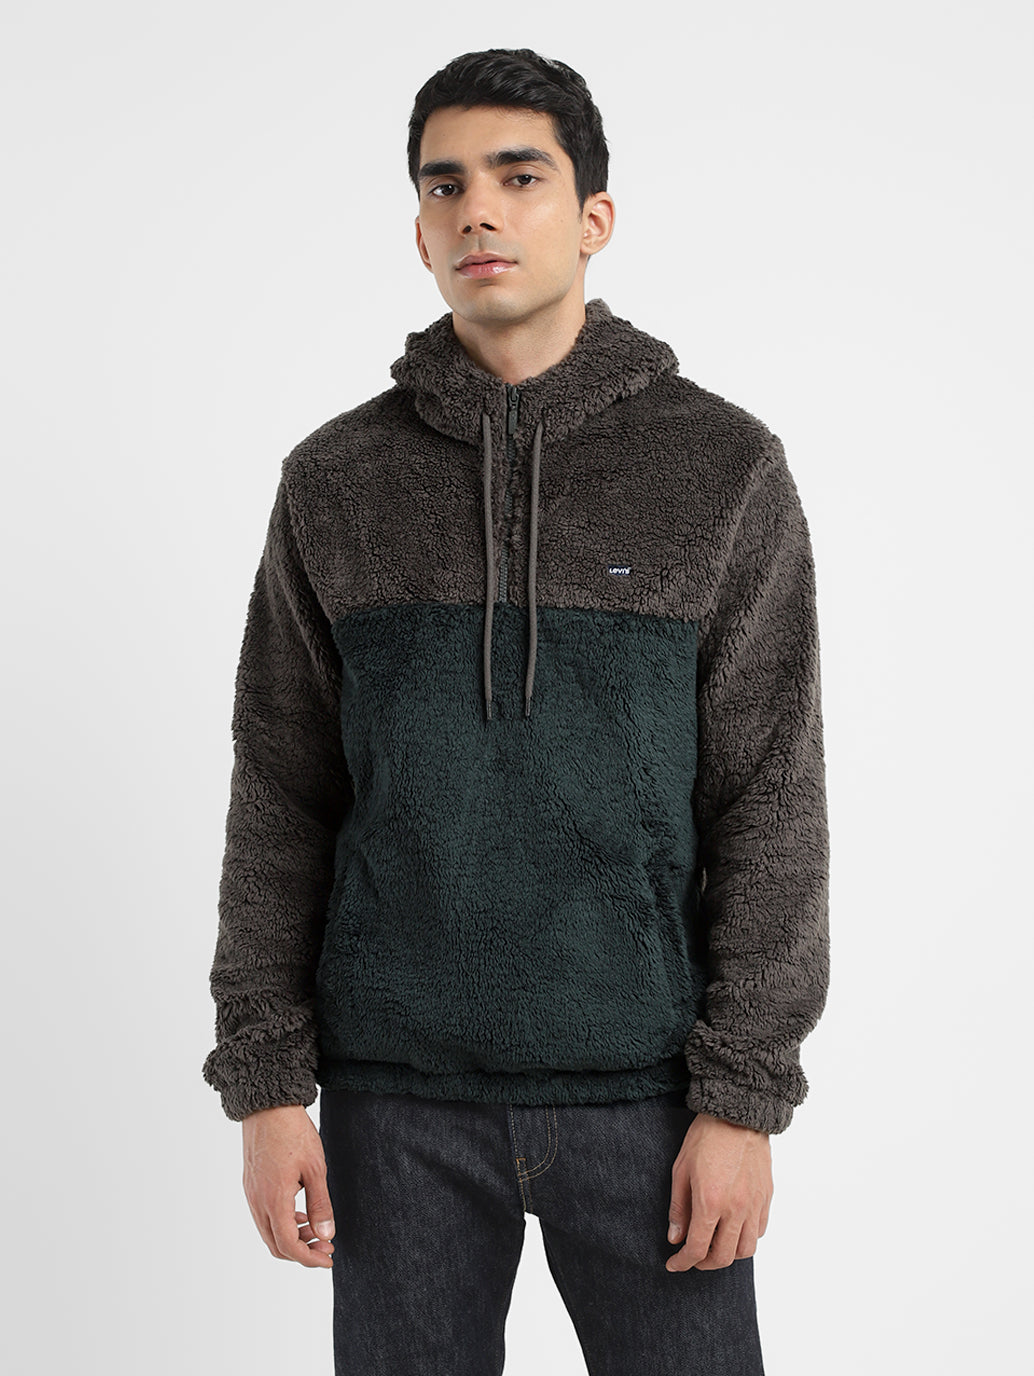 Men's Solid Grey Hooded Sweatshirt